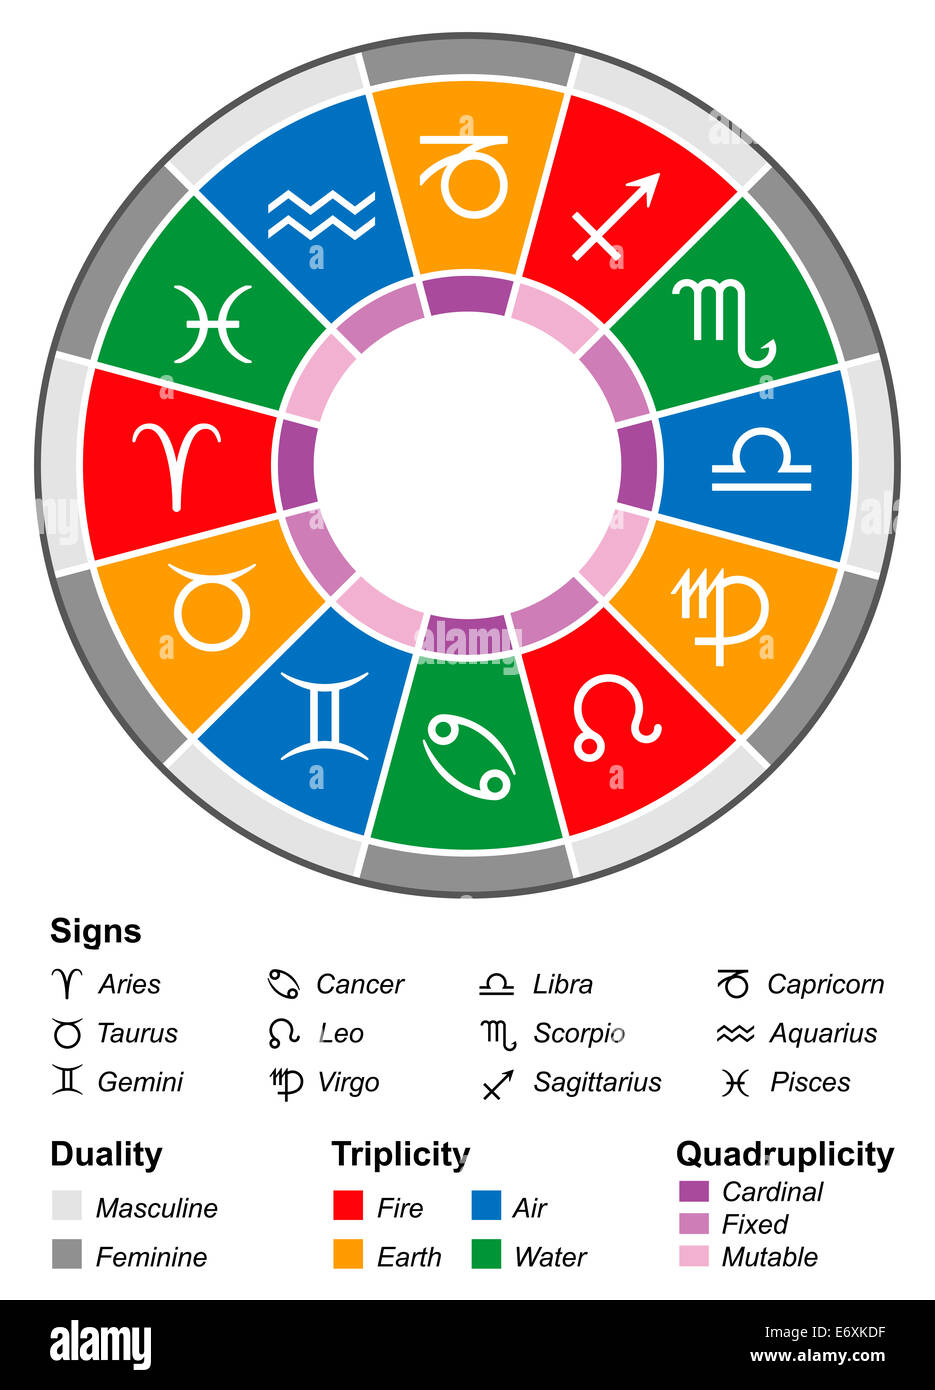 Astrologia zodiaco con dodici segni e le più importanti divisioni, vale a dire la dualità, triplicity, e quadruplicity. Foto Stock